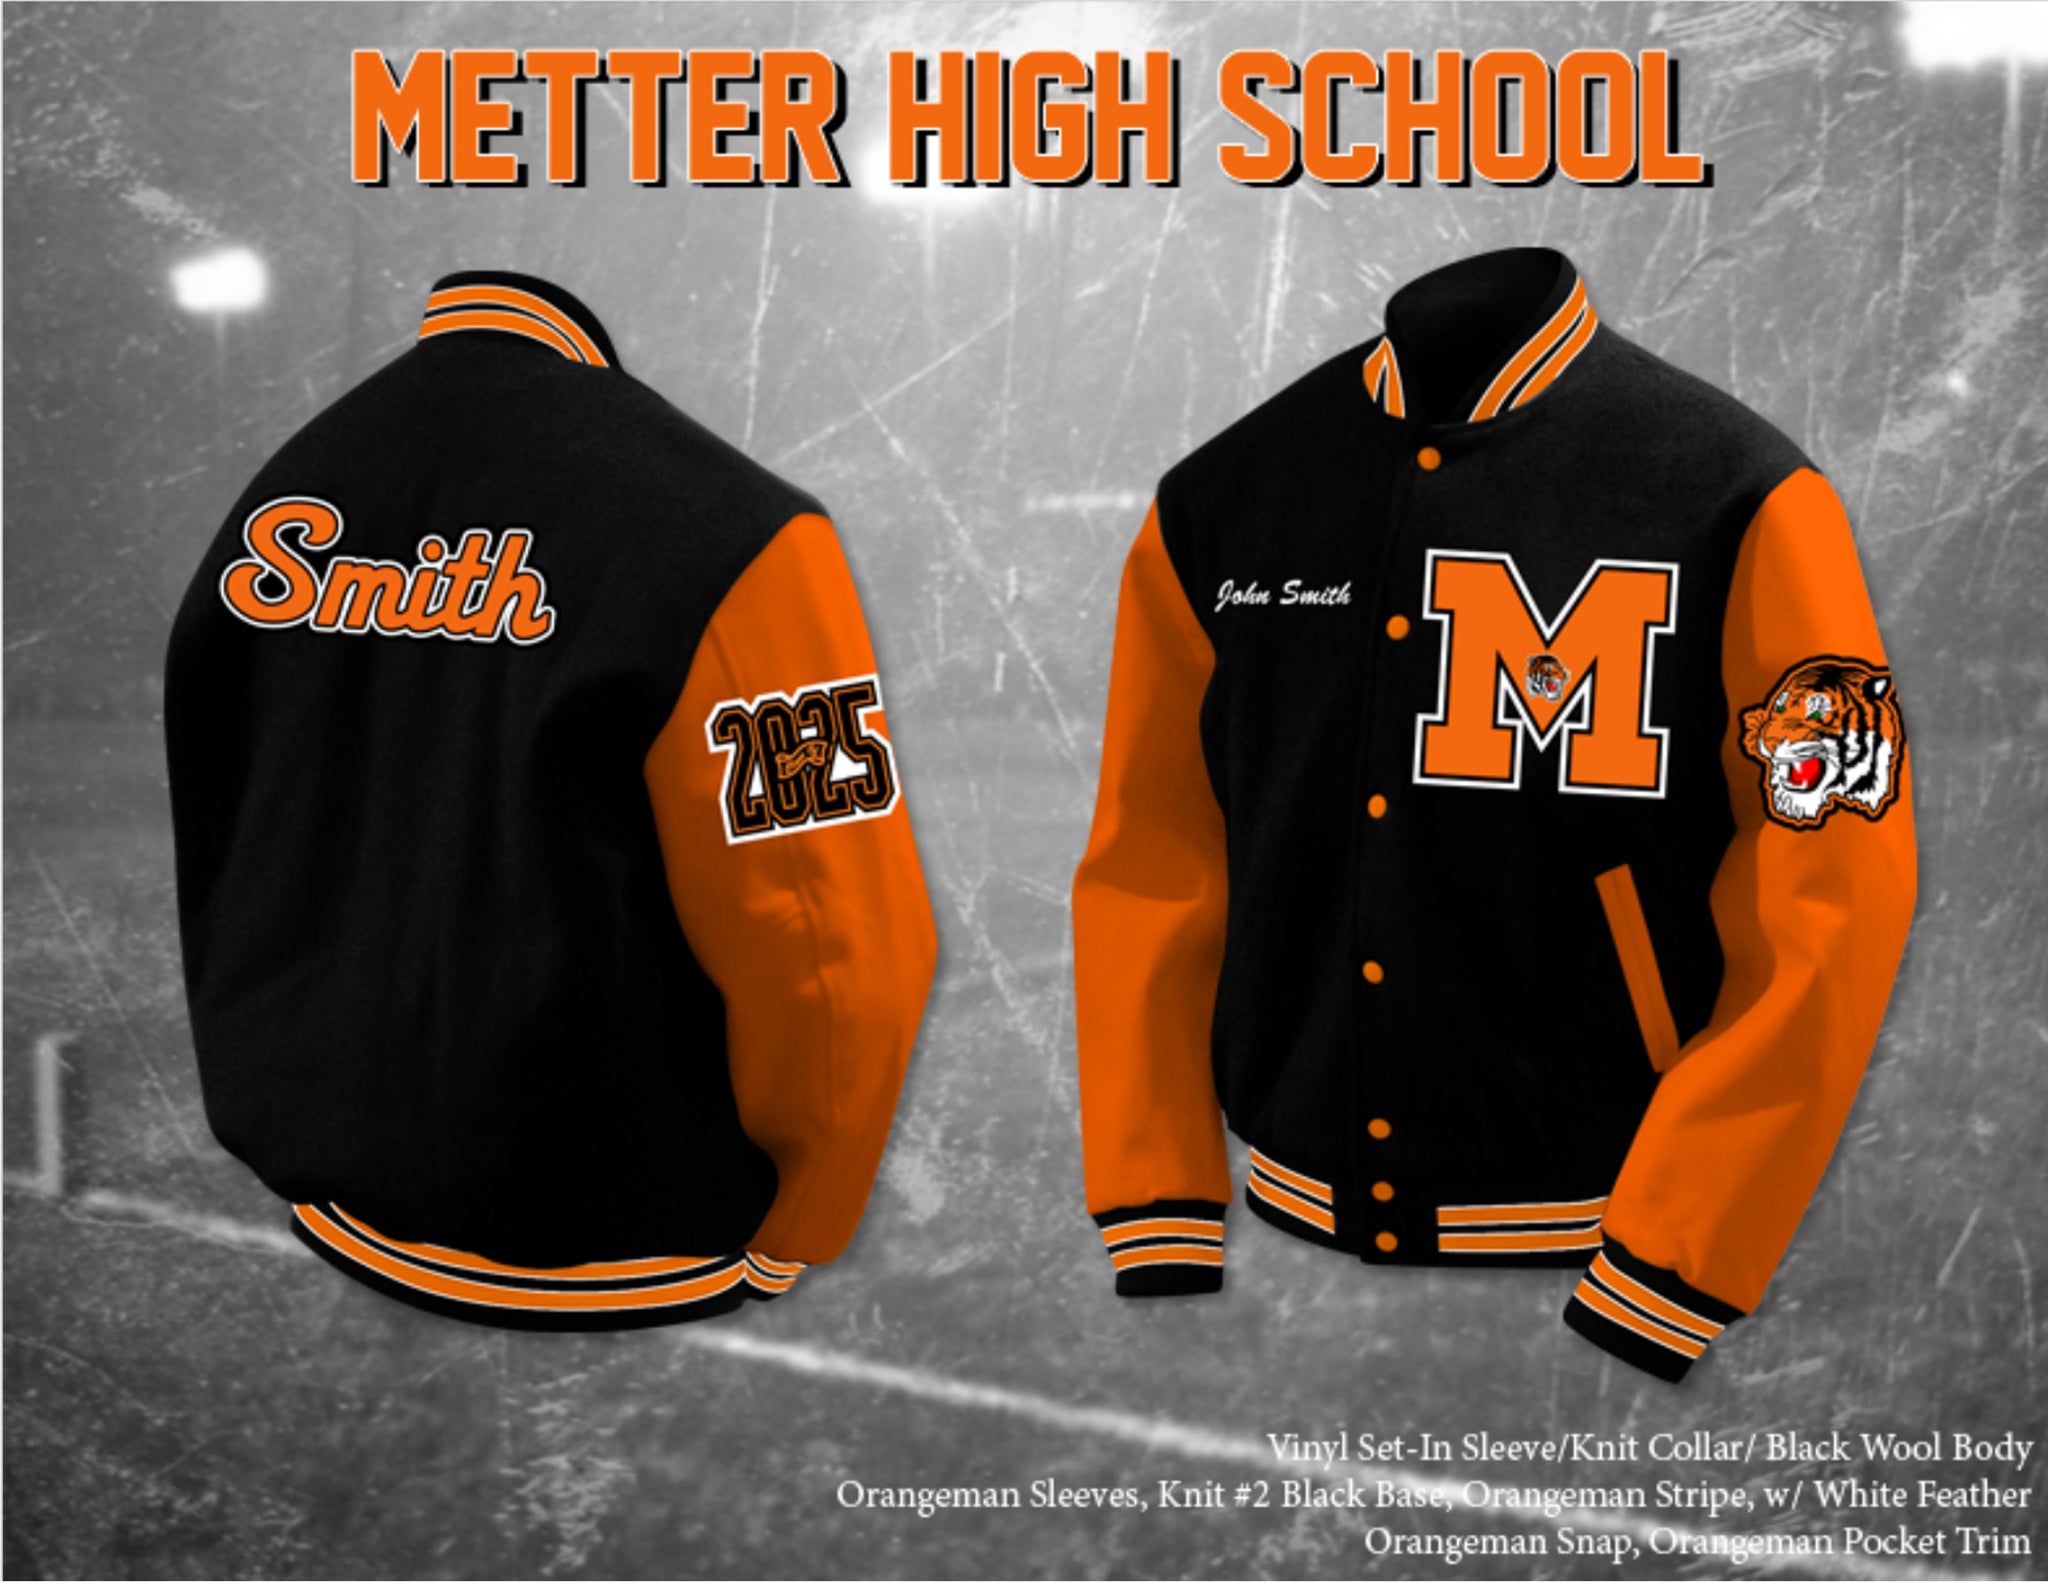 Metter High School Letterman Jacket